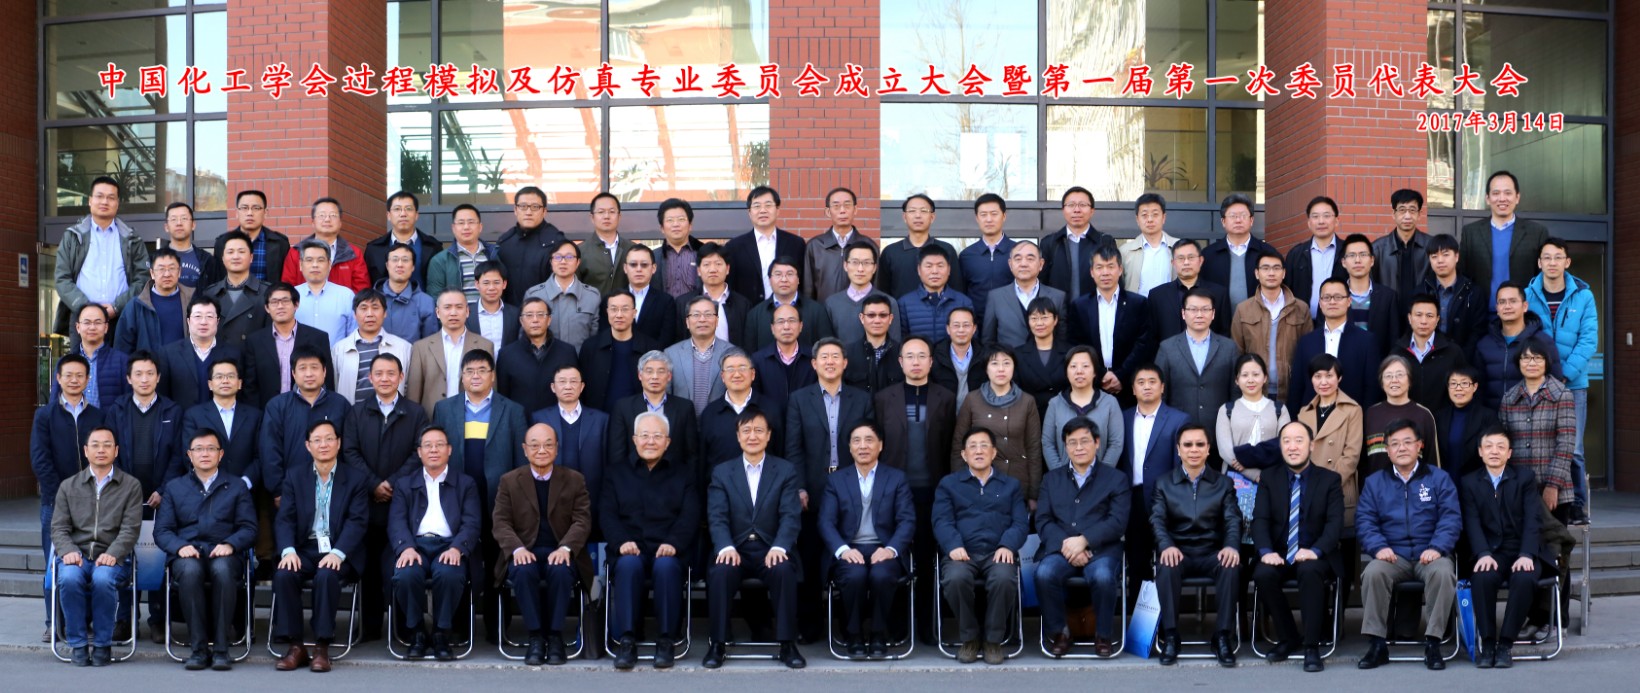 中国化工学会过程模拟及仿真专业委员会成立